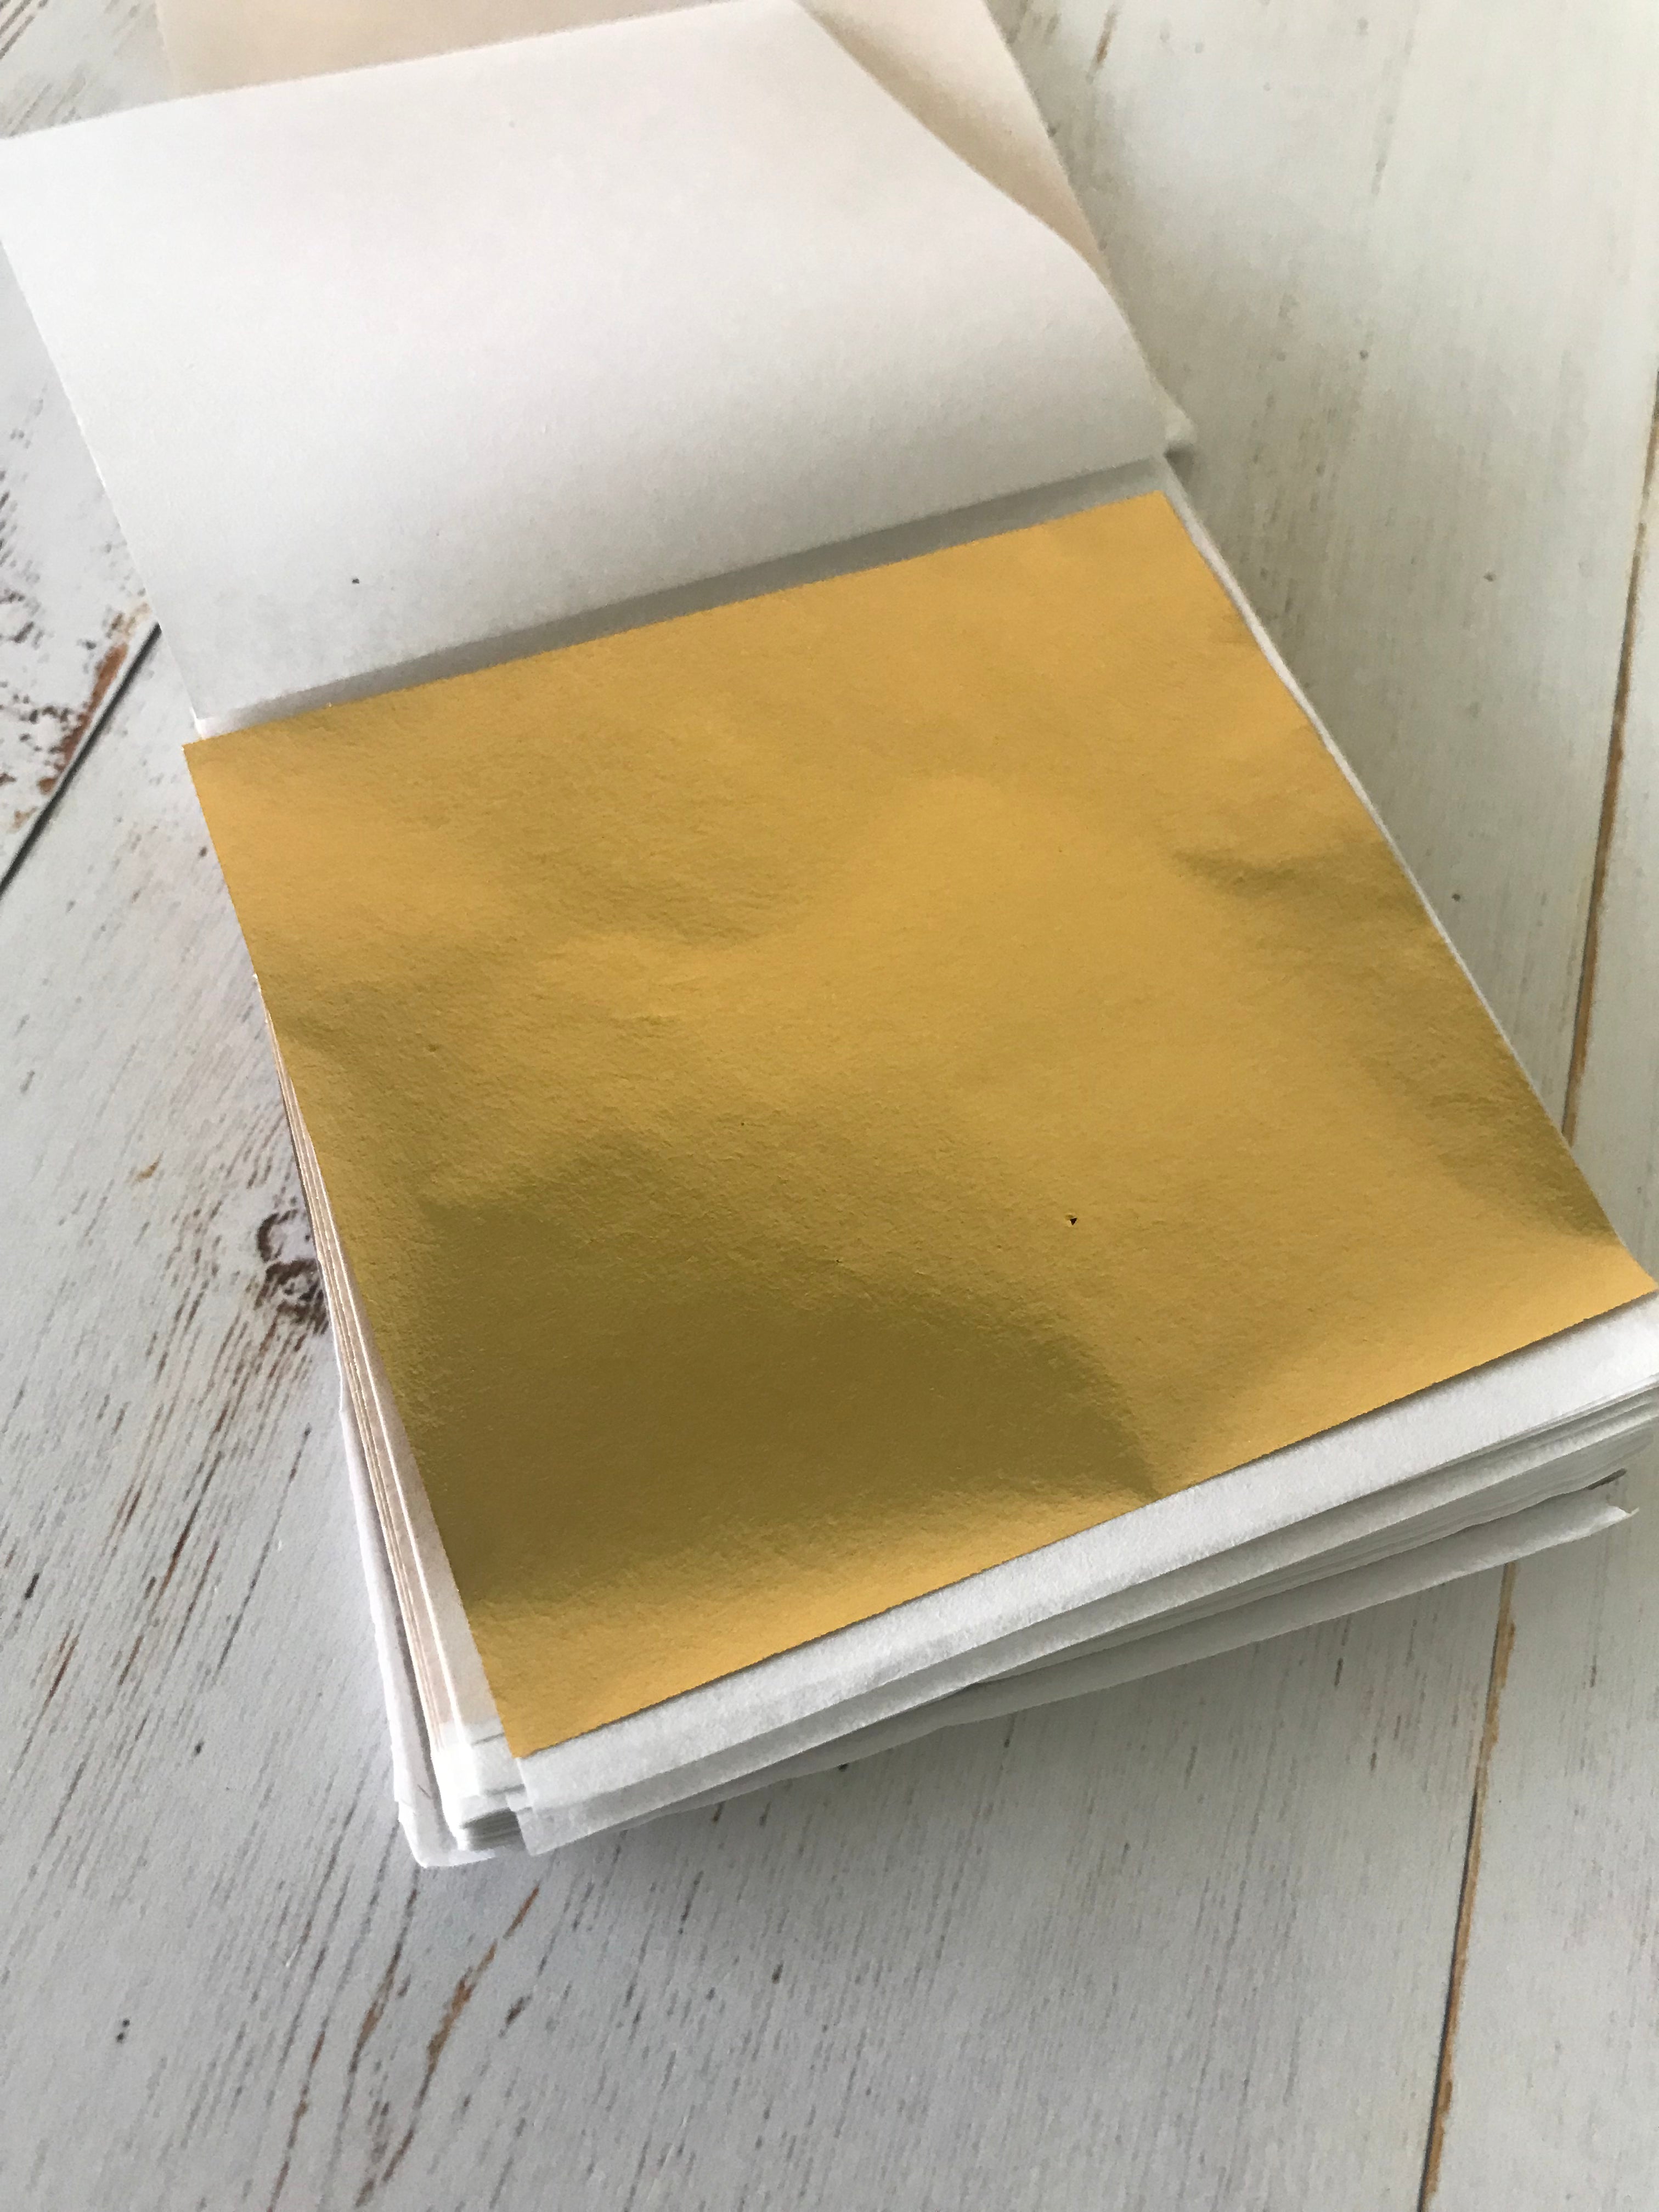 K Gold Leaf Sheets 9cm x 9cm (100 Sheets)